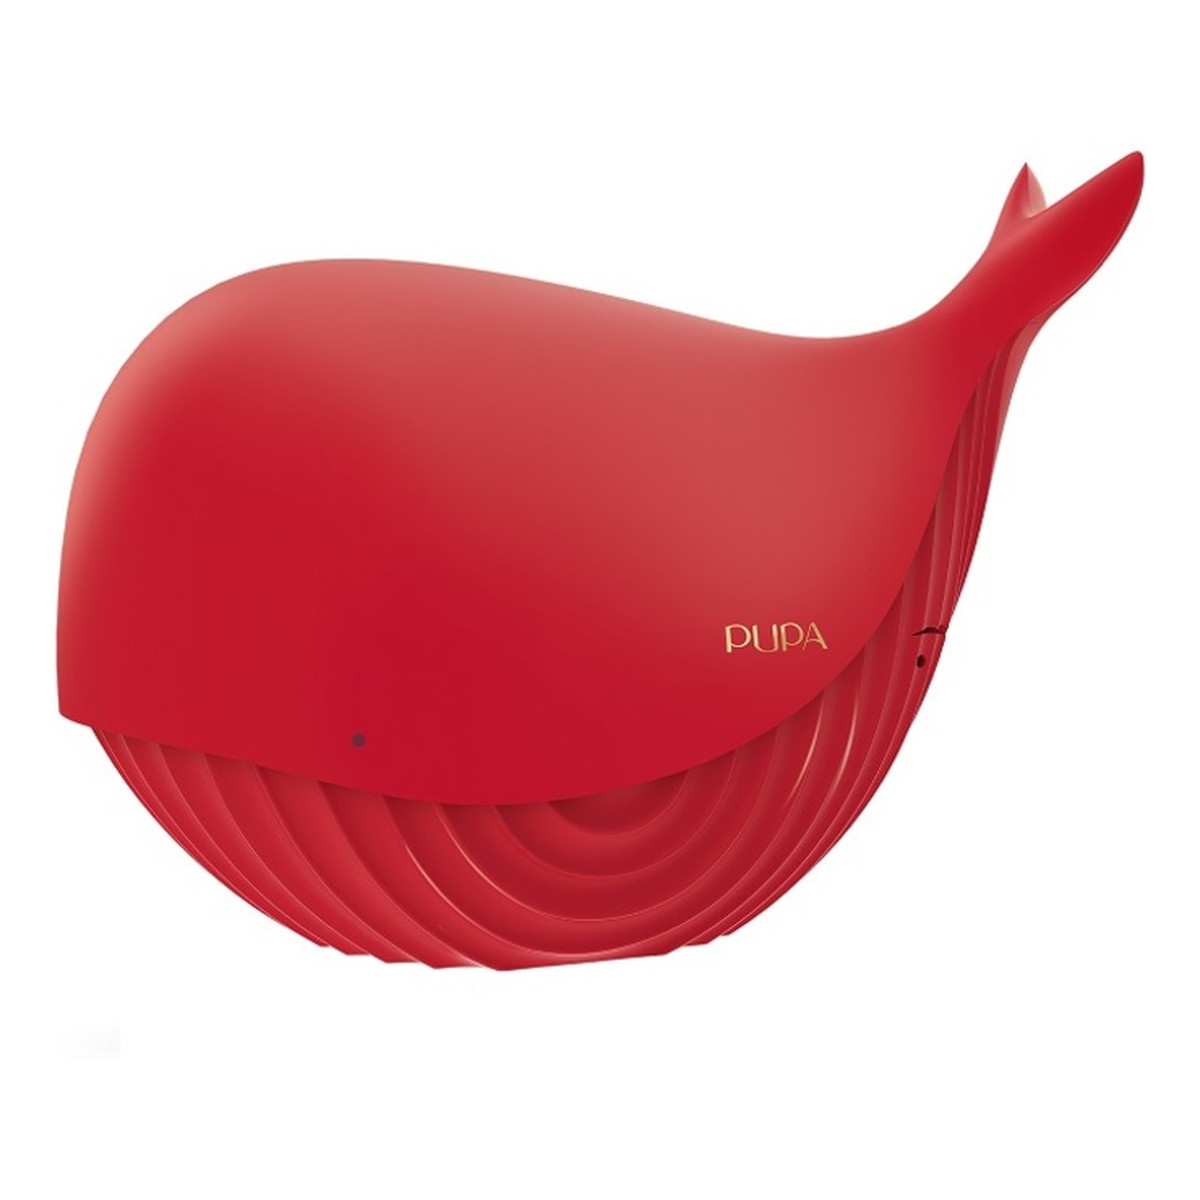 Pupa Milano Whale 4 zestaw do makijażu Red Warm Shades 21g